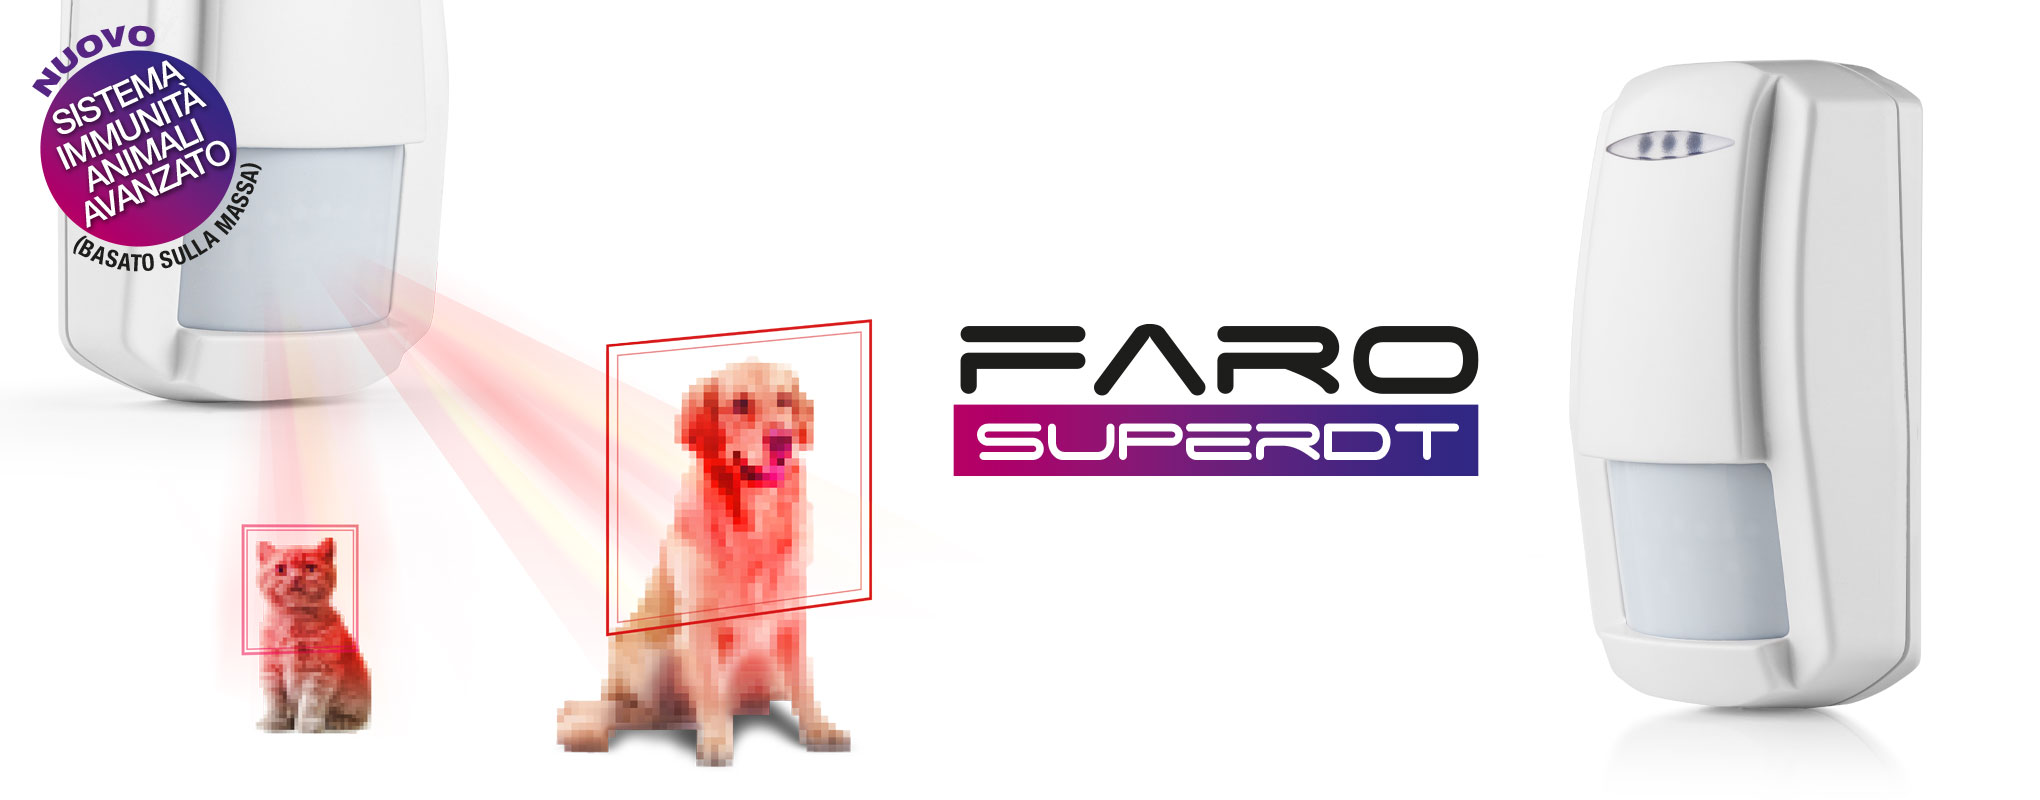 Faro SUPER DT | Rilevatore a doppia tecnologia con immunità agli animali